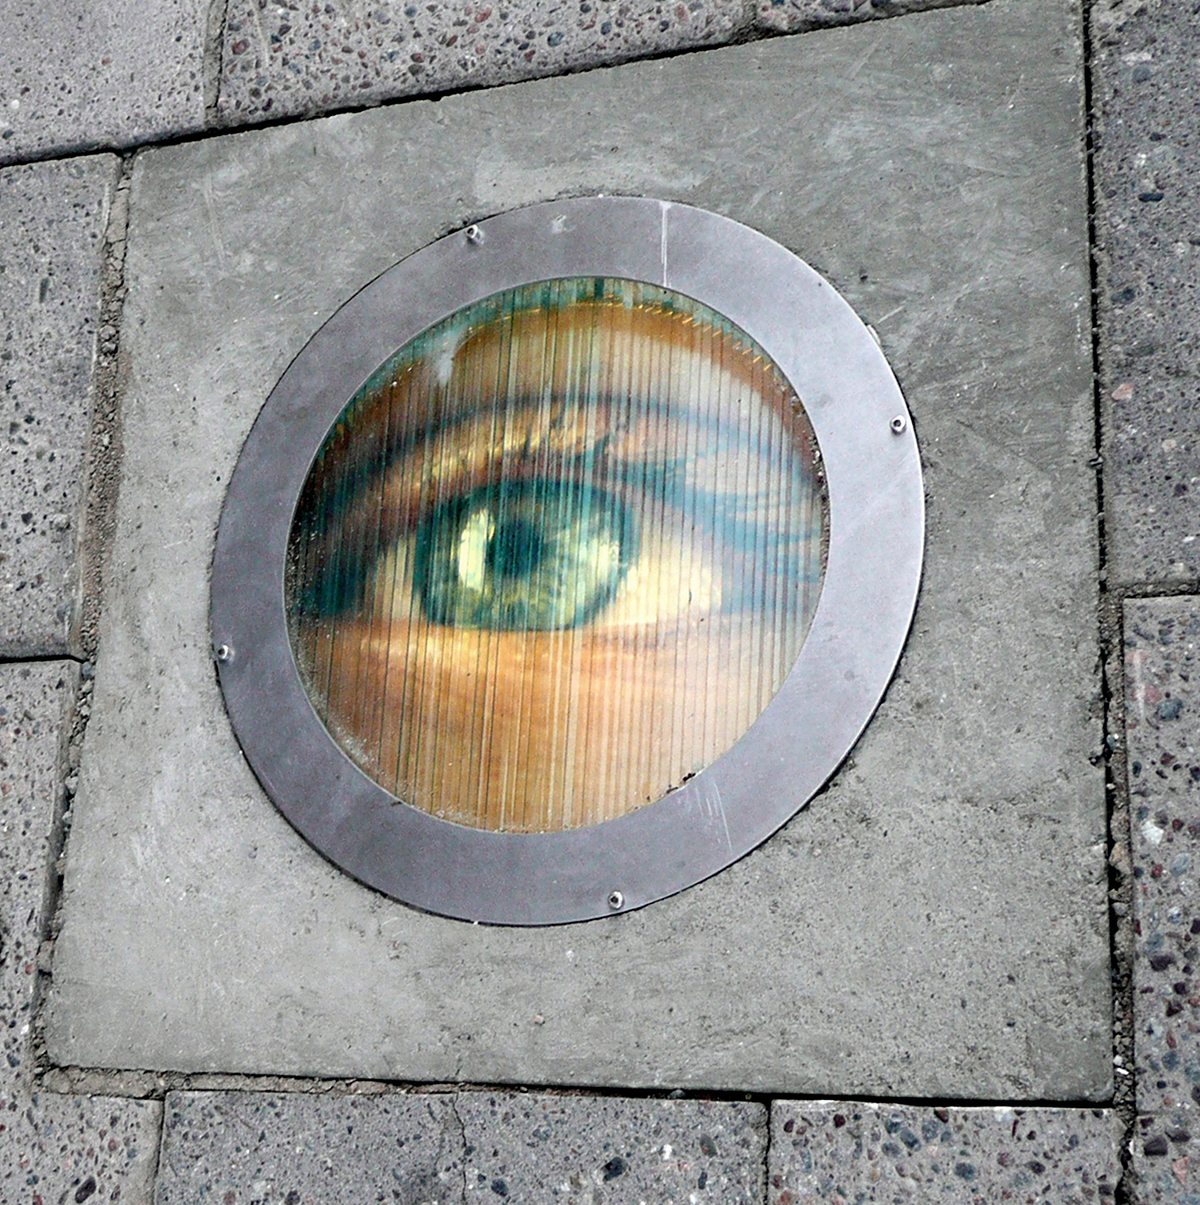 Ett öga är målat på ett runt gasskydd för en gatlampa som sitter i marken.  